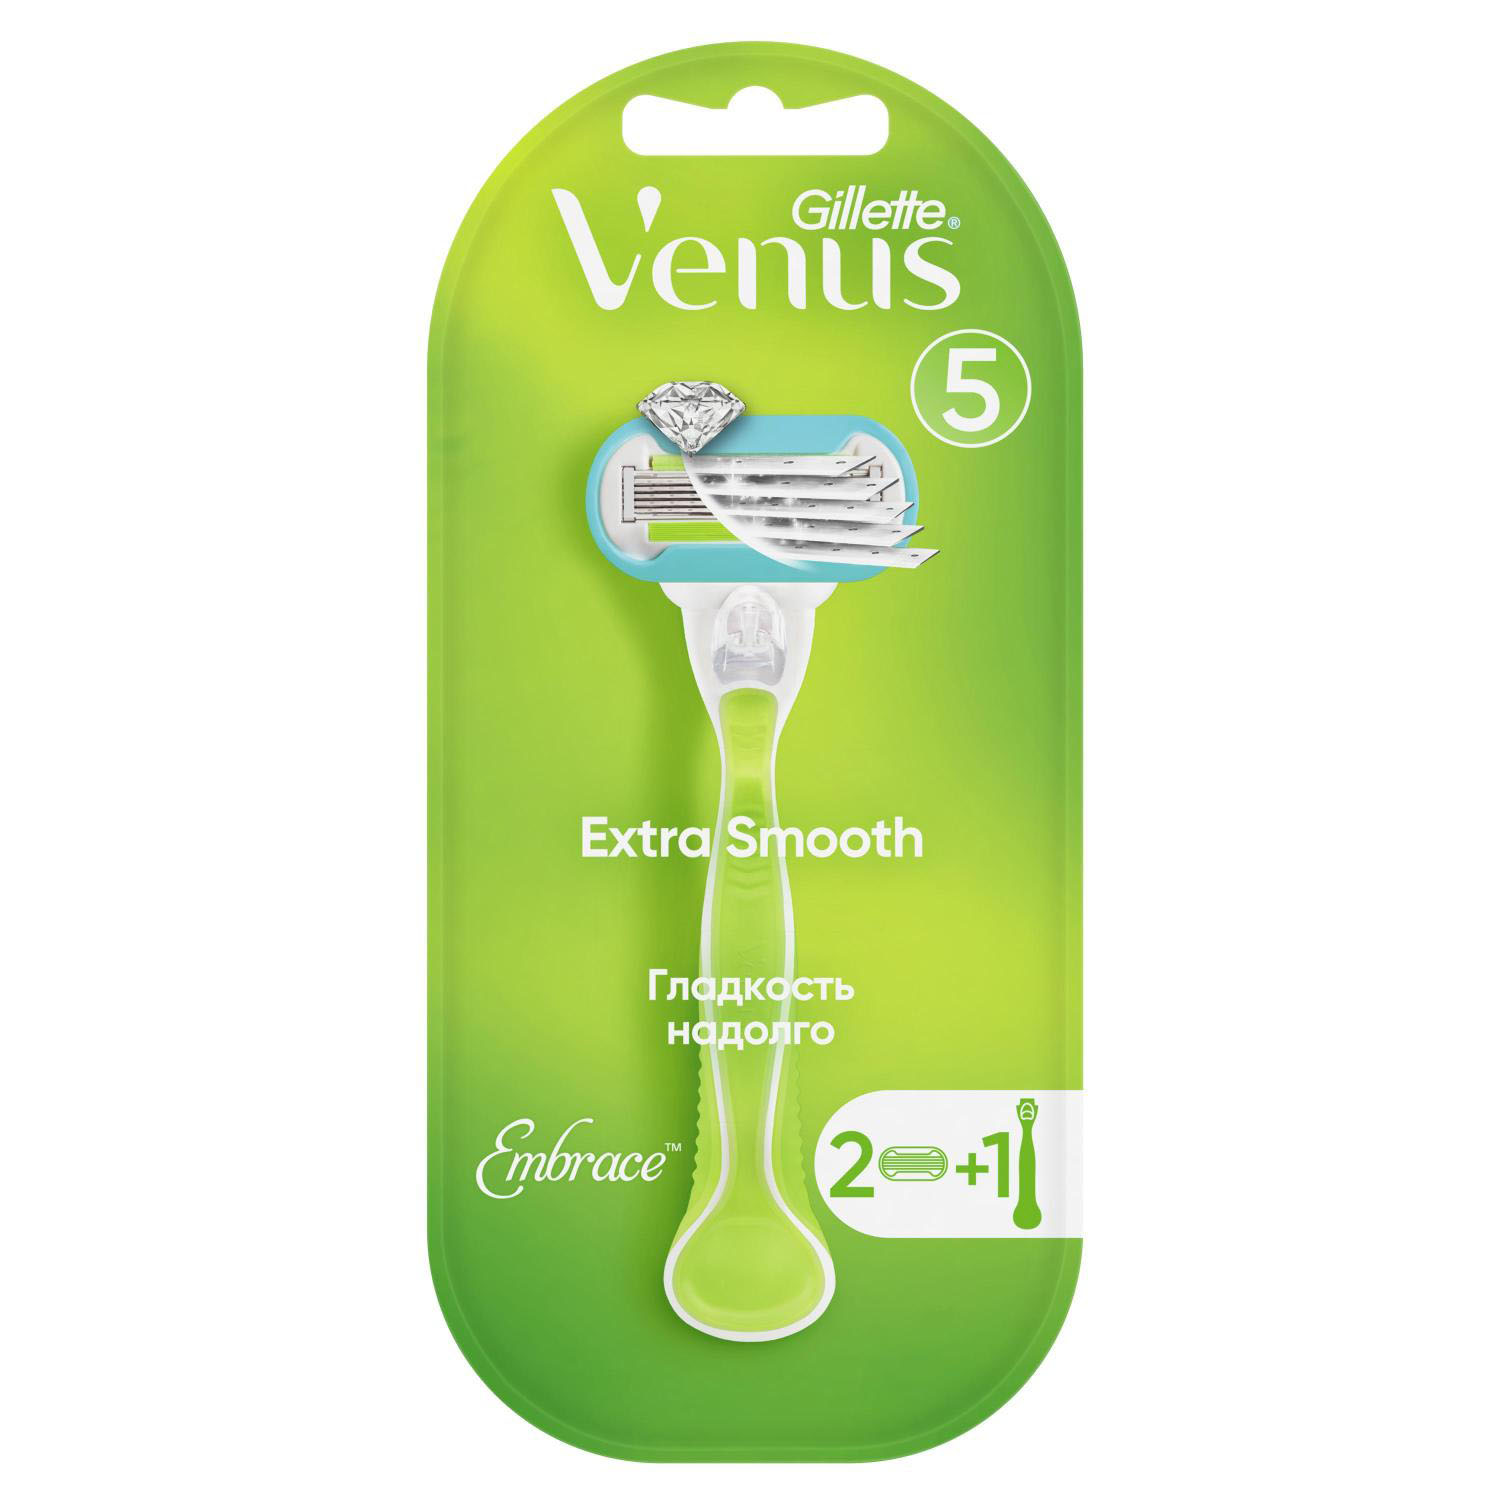 Жиллетт станок для бритья Венус Эмбрейс +2кассеты жиллетт станок для бритья фьюжн 2кассеты